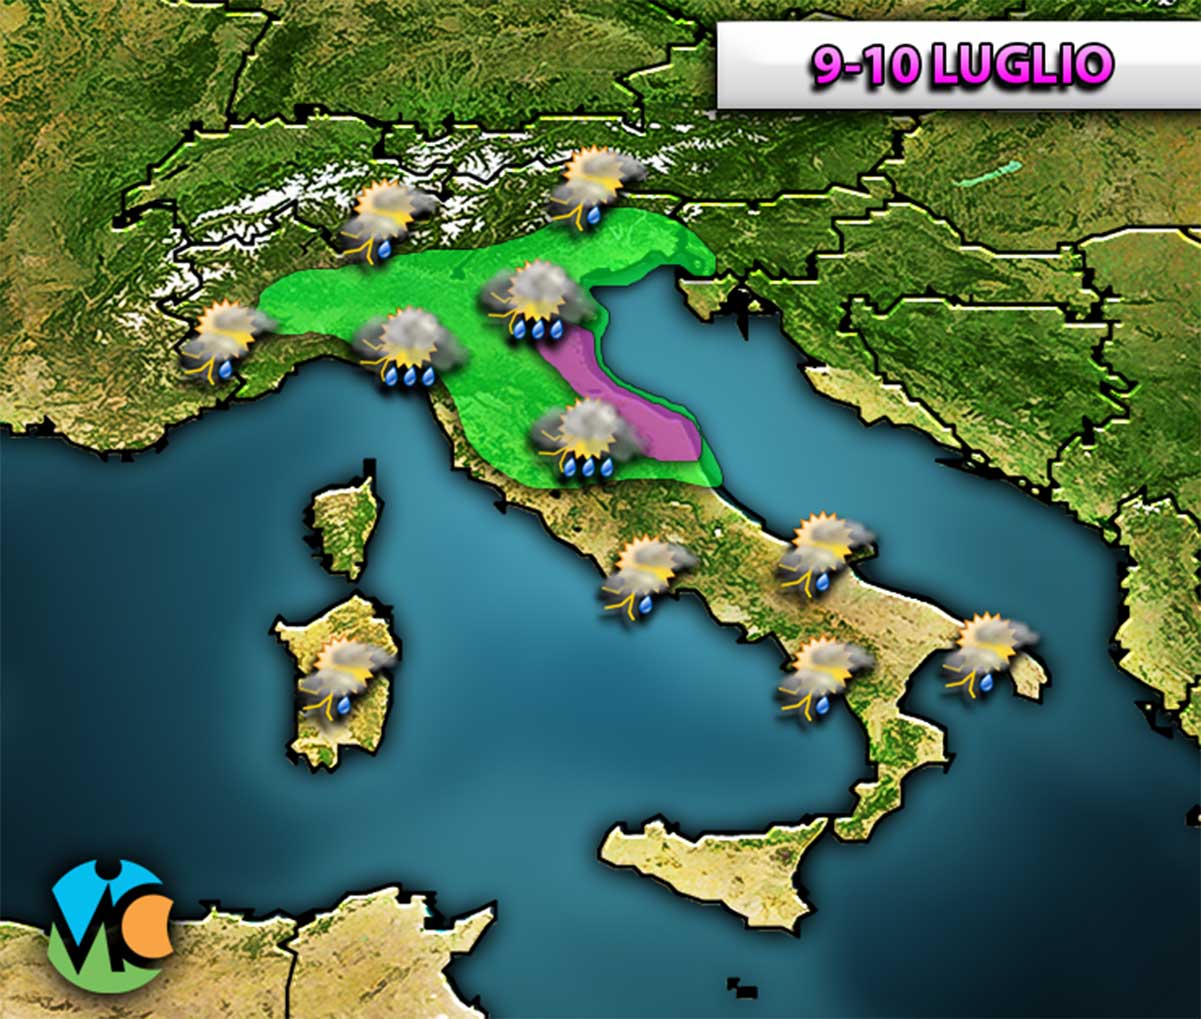 Acquazzoni, temporali, nubifragi e grandine saranno i protagonisti dei prossimi giorni sull'Italia per via del transito di una perturbazione.